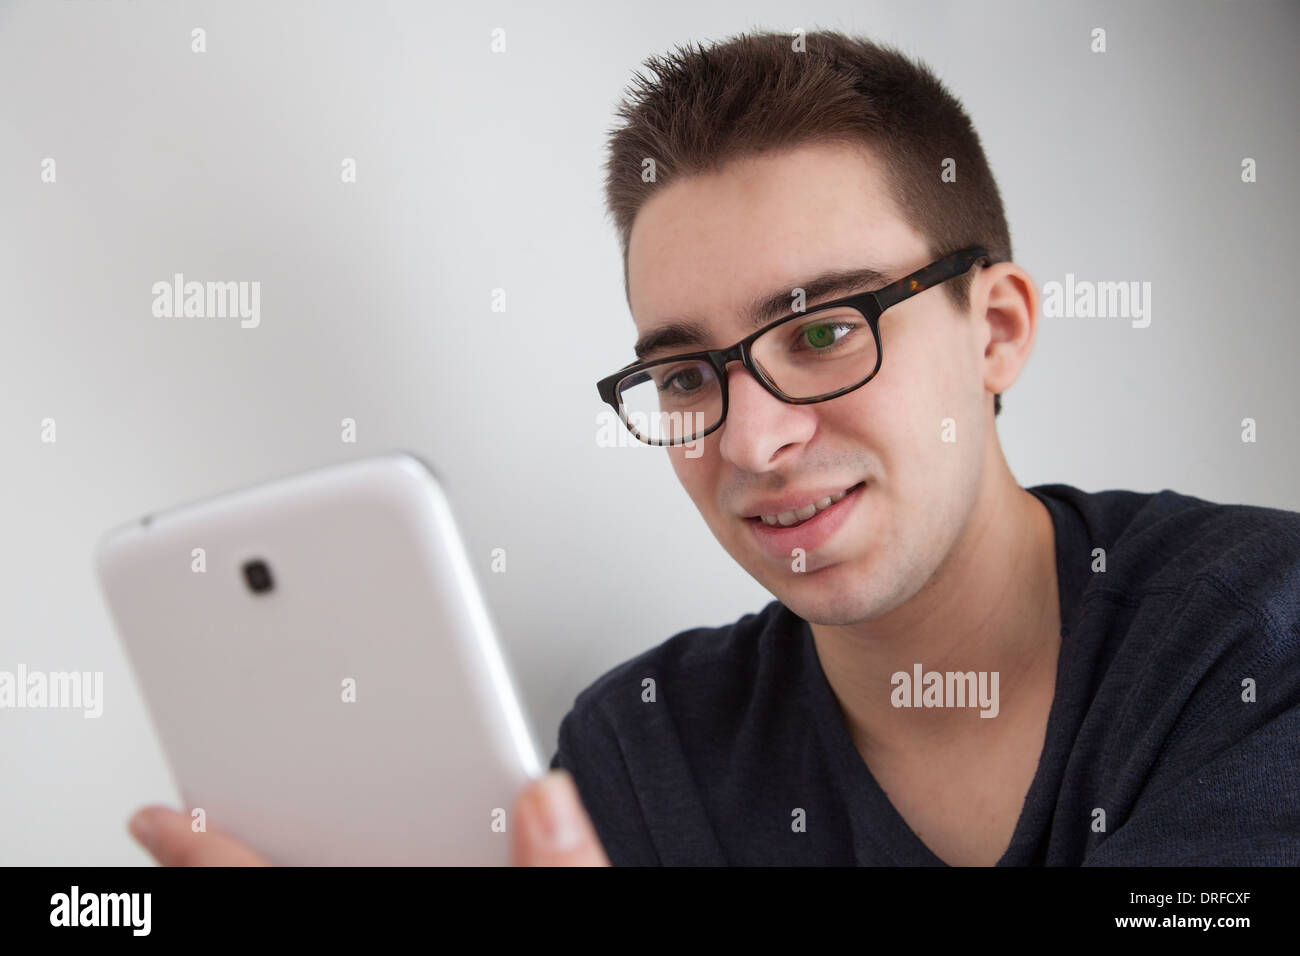 Buona ricerca giovane con gli occhiali, tenendo in mano un bianco digitale compressa. Piccolo spazio di copia. Foto Stock